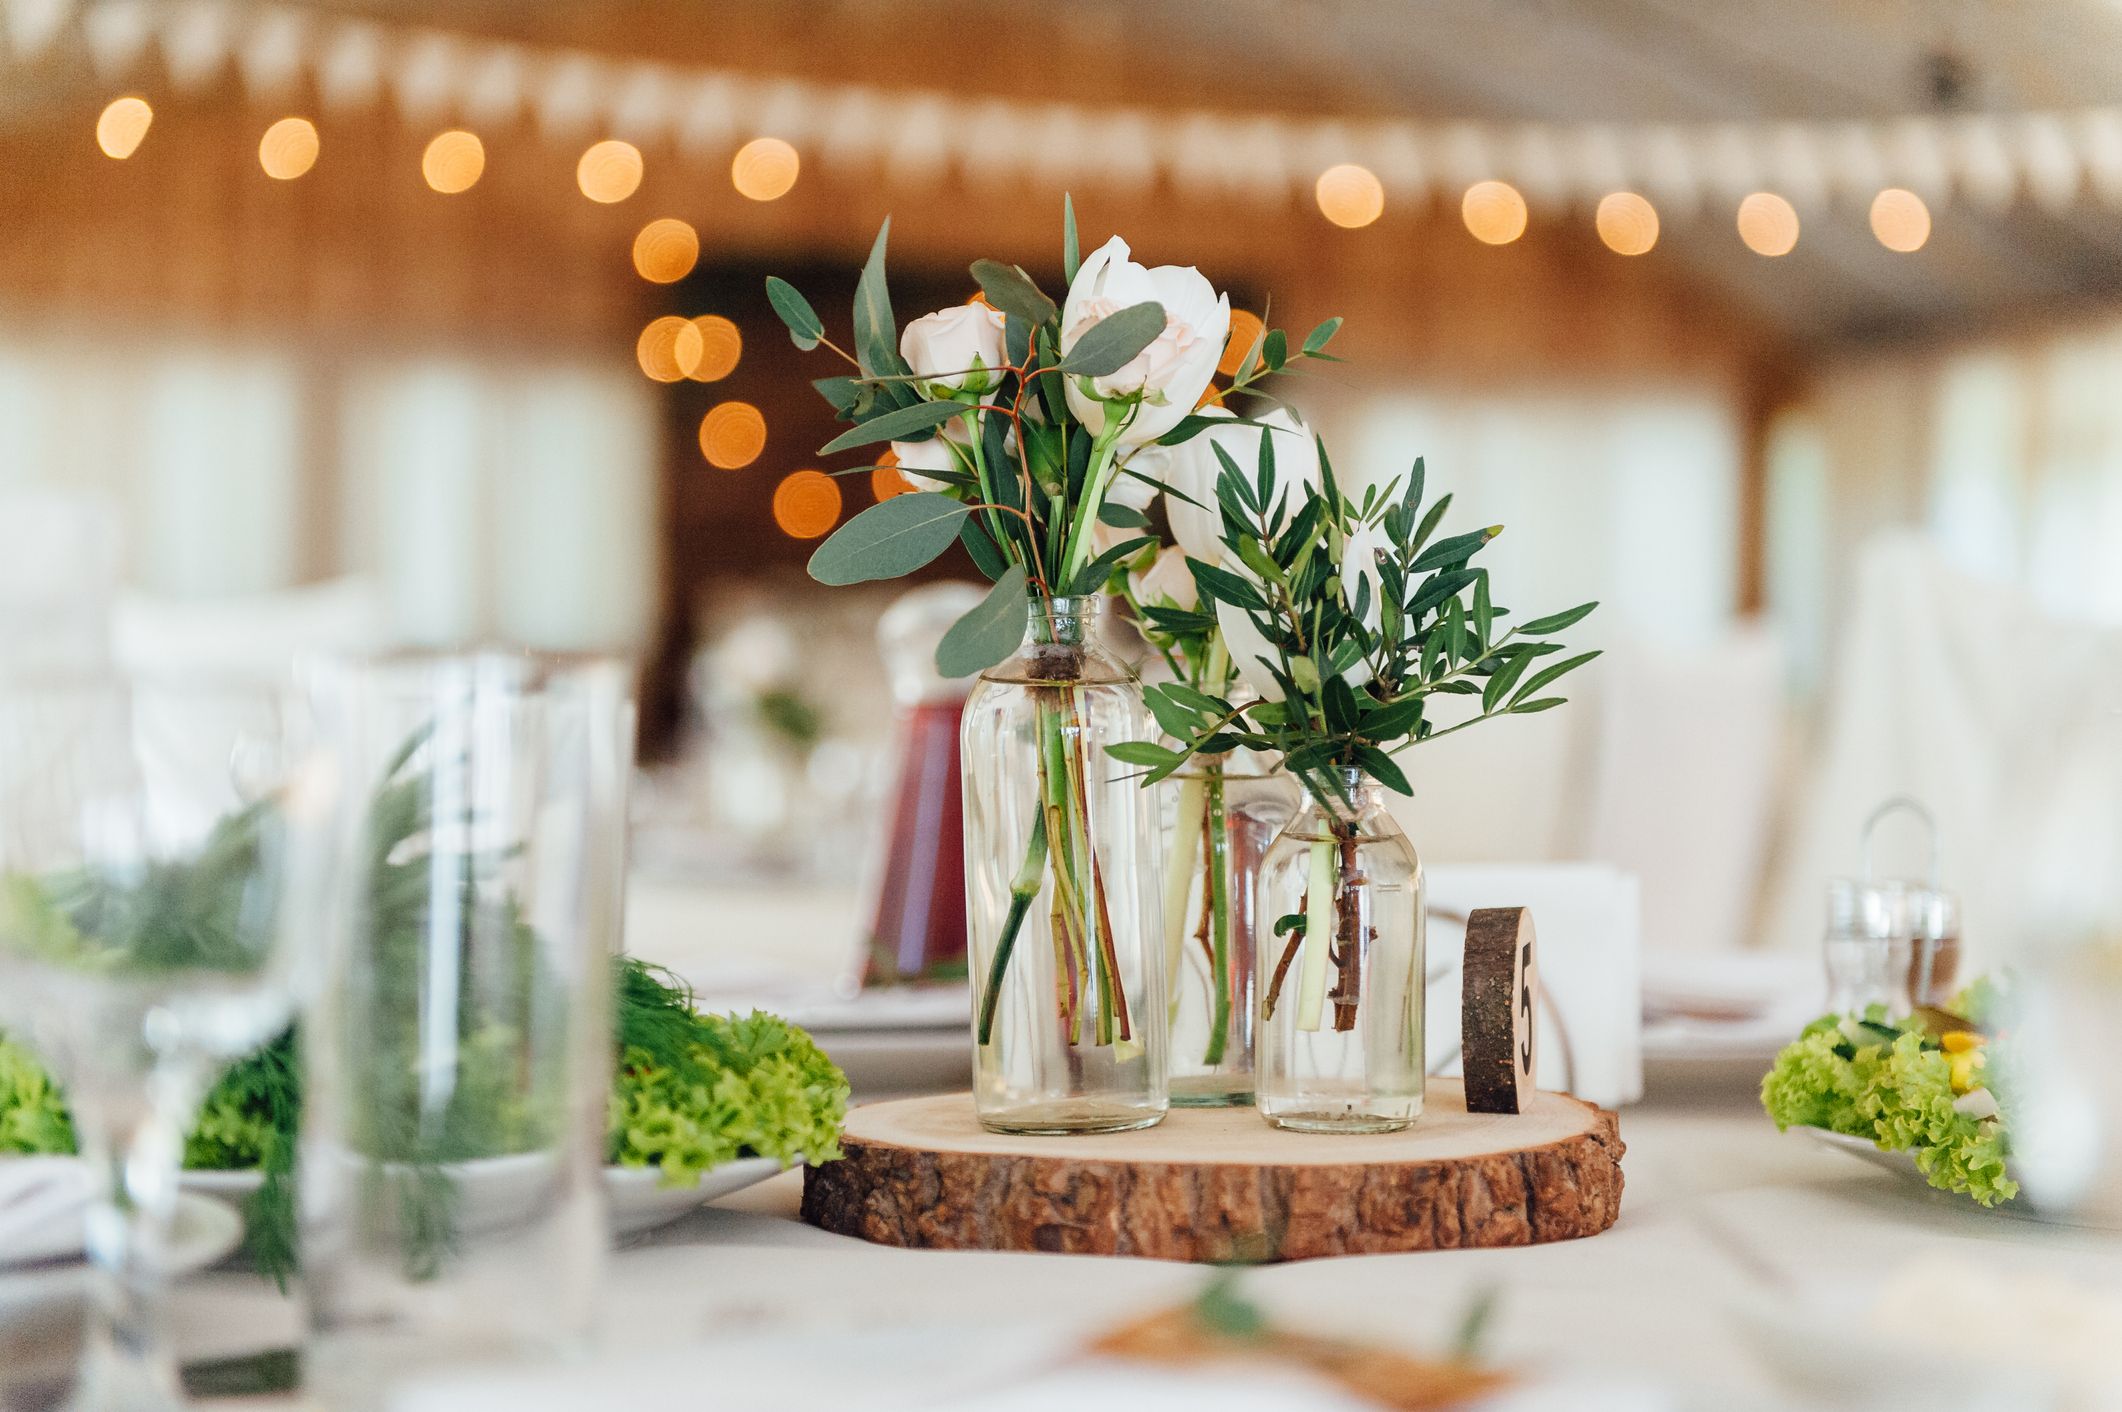 37 Festive Fall Wedding Ideas - Rustic Decor for a Fall Wedding